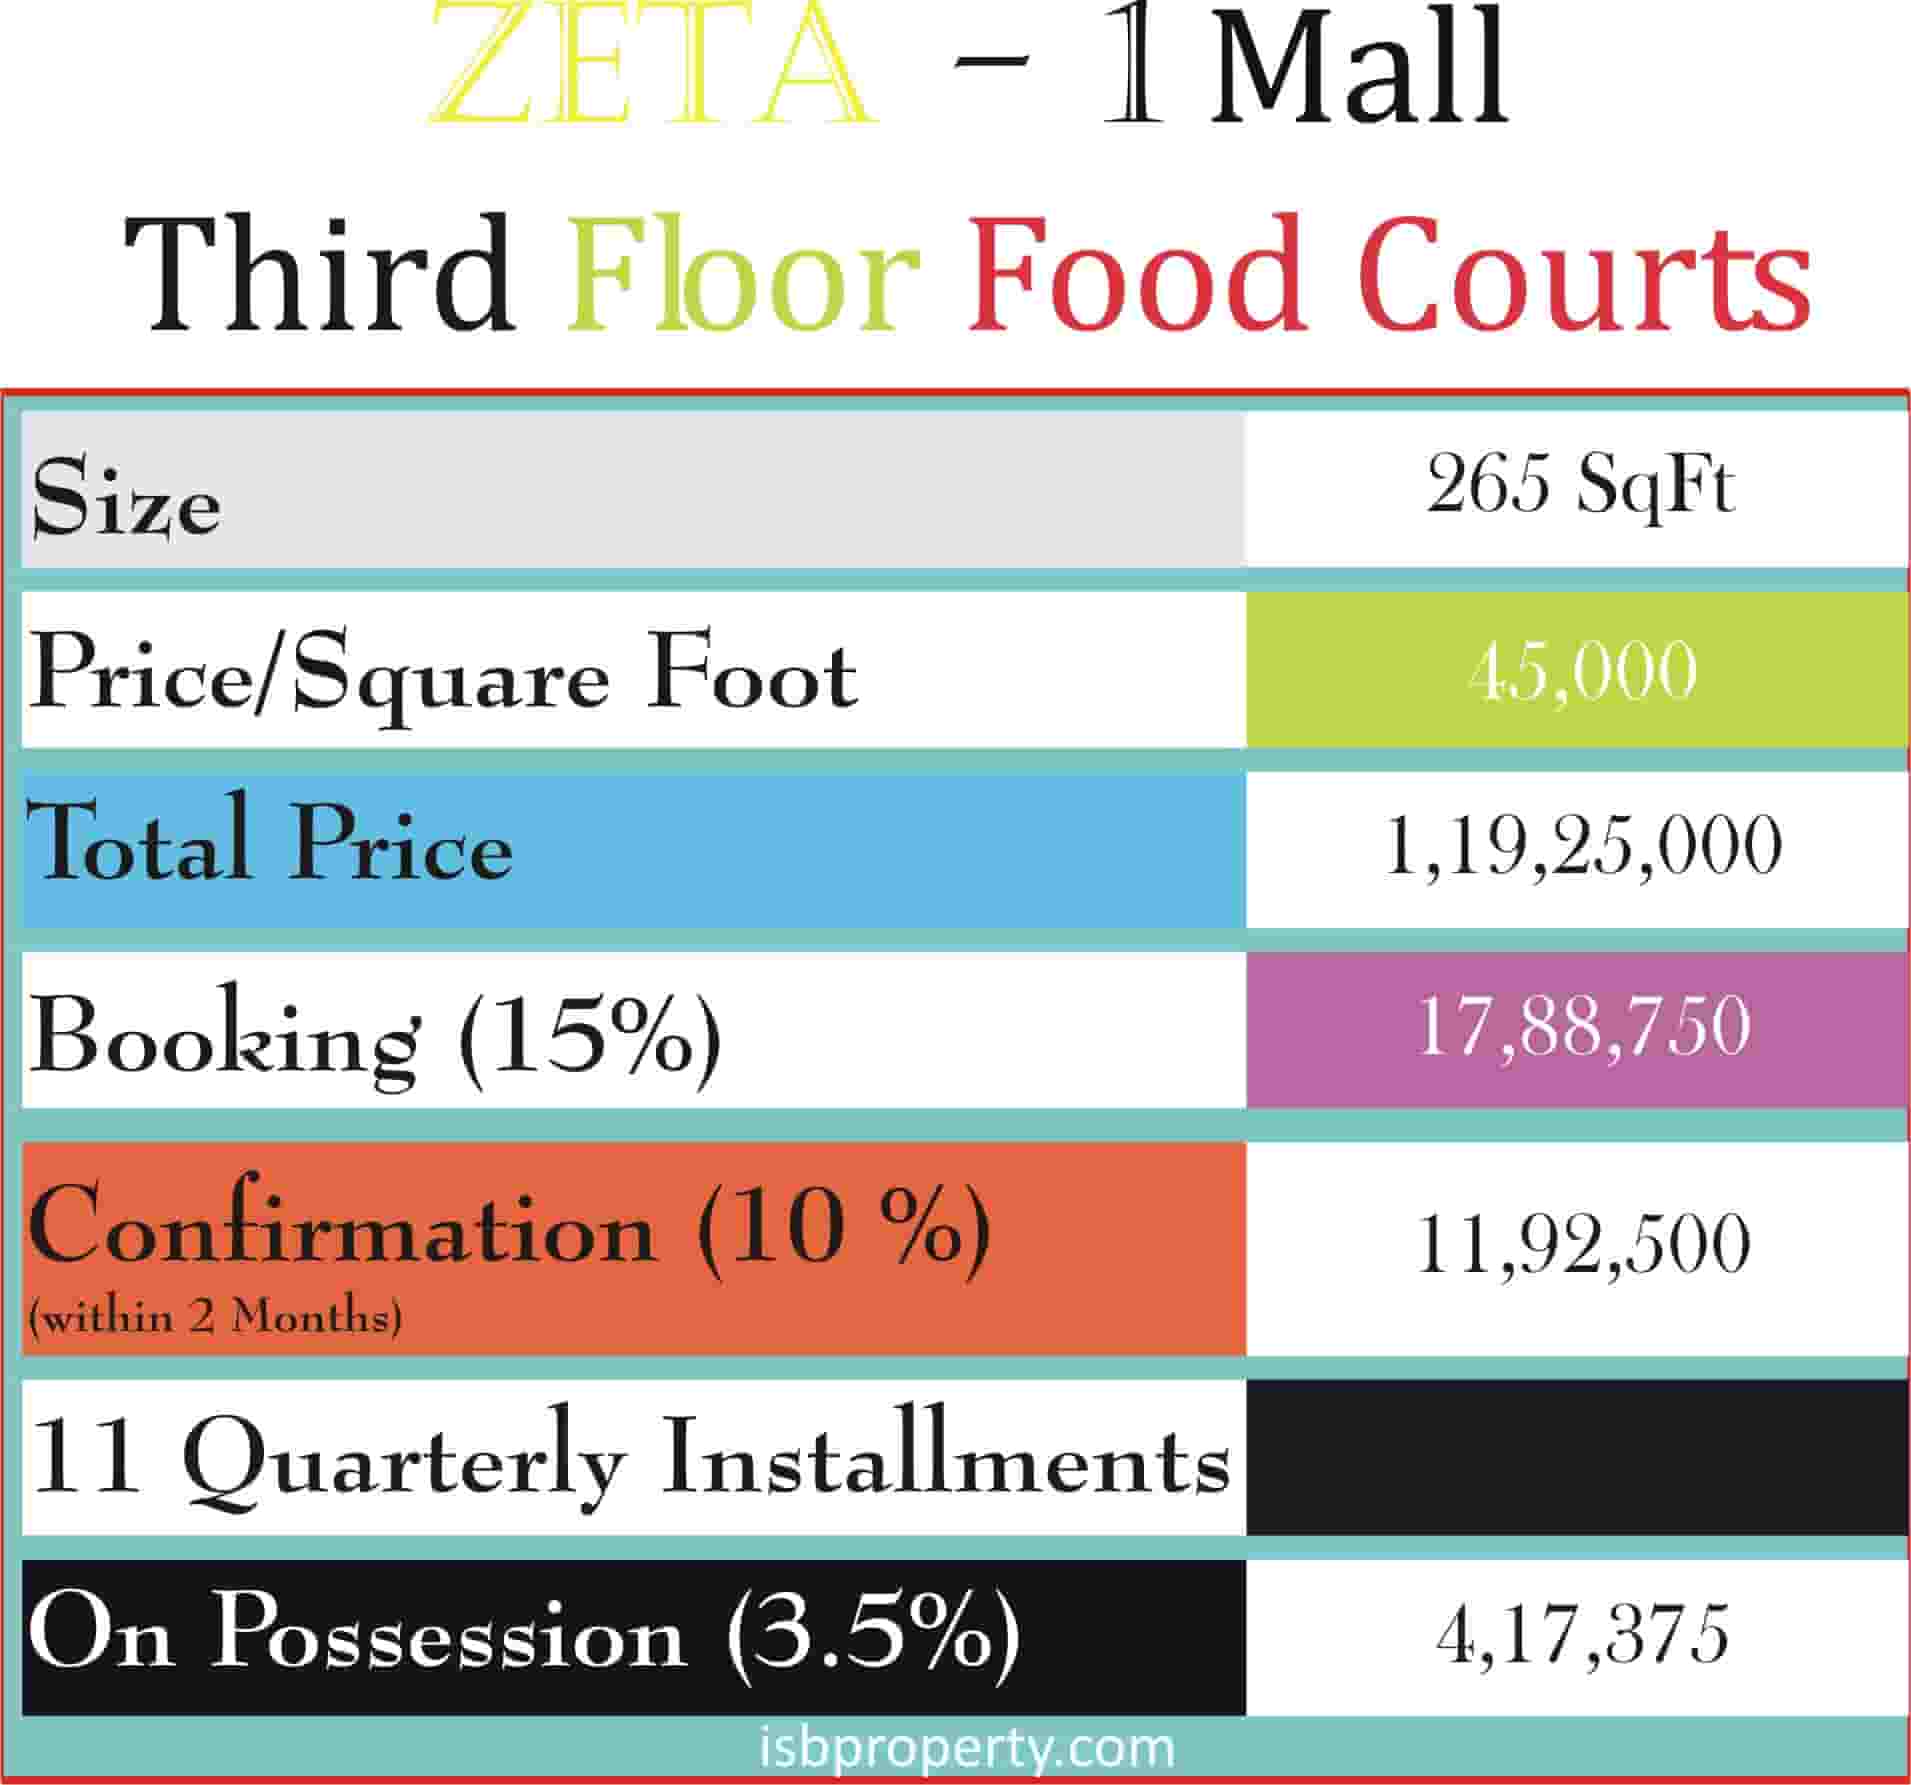 Zeta-1 Mall 3rd Floor Payment Plan